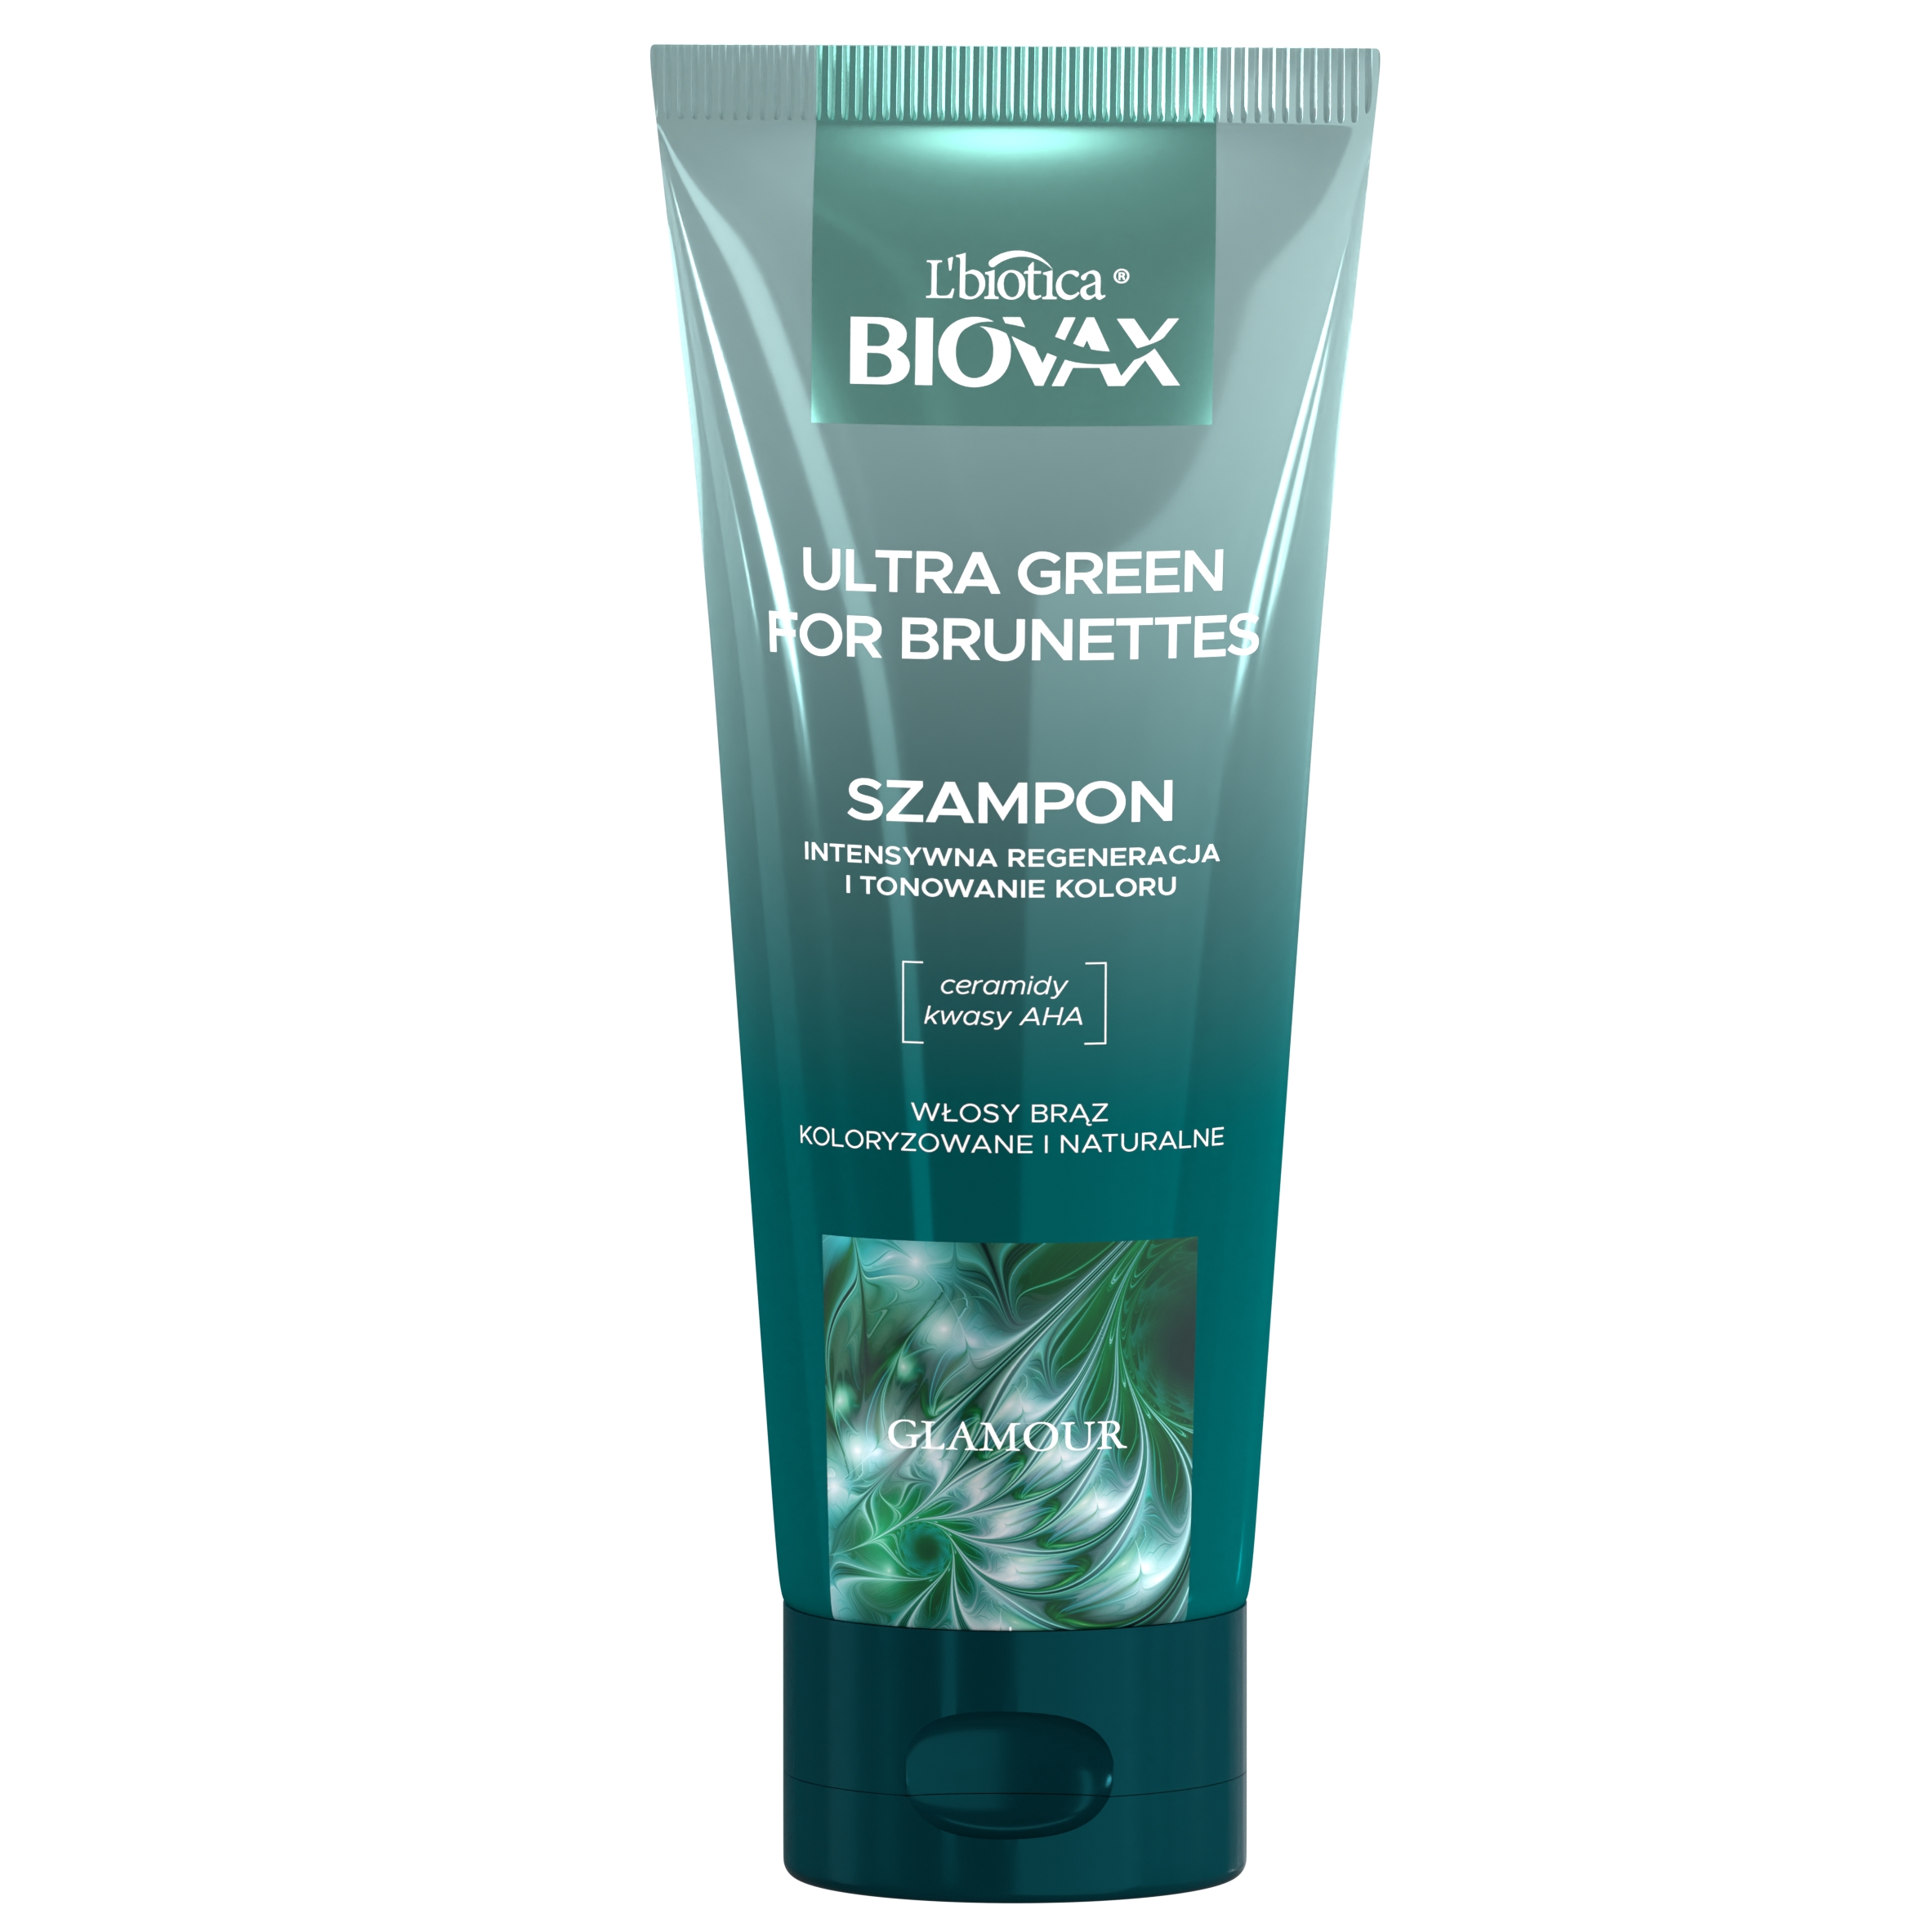 lbiotica biovax szampon cavior